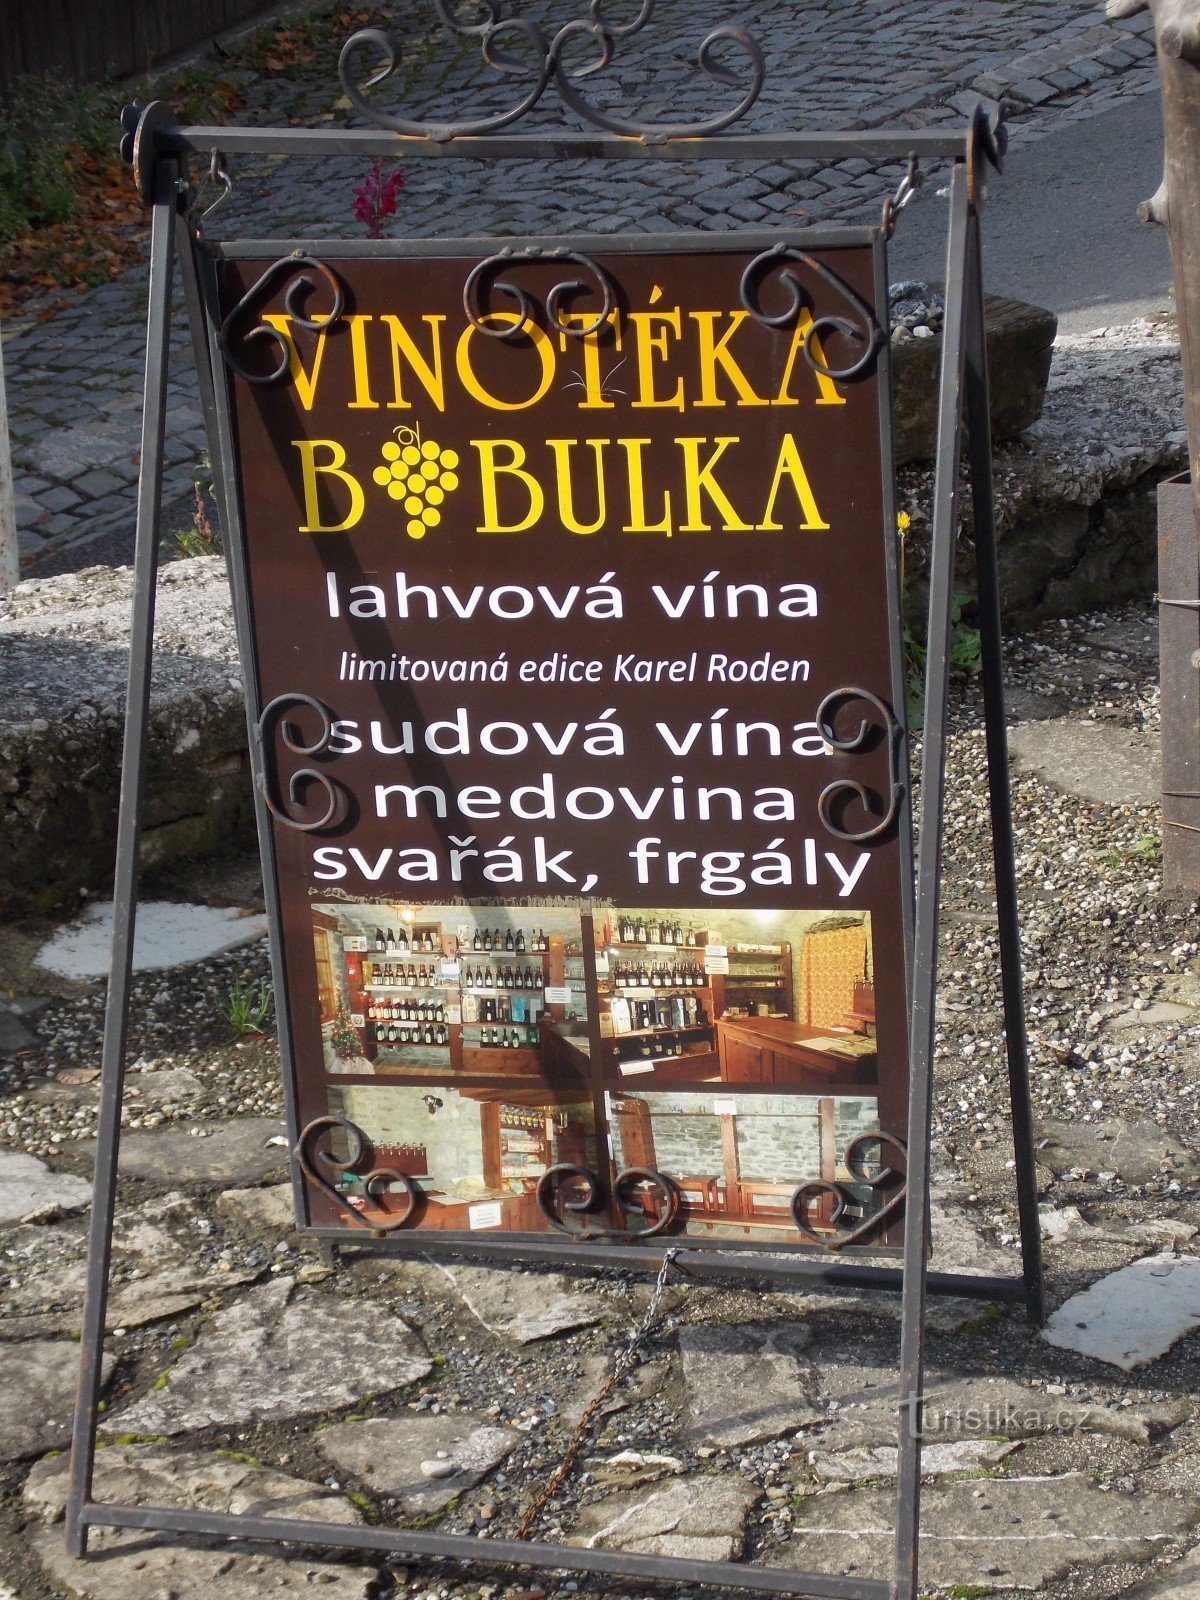 За хорошим вином отправляйтесь в винный магазин Bobulka в Штрамберке.